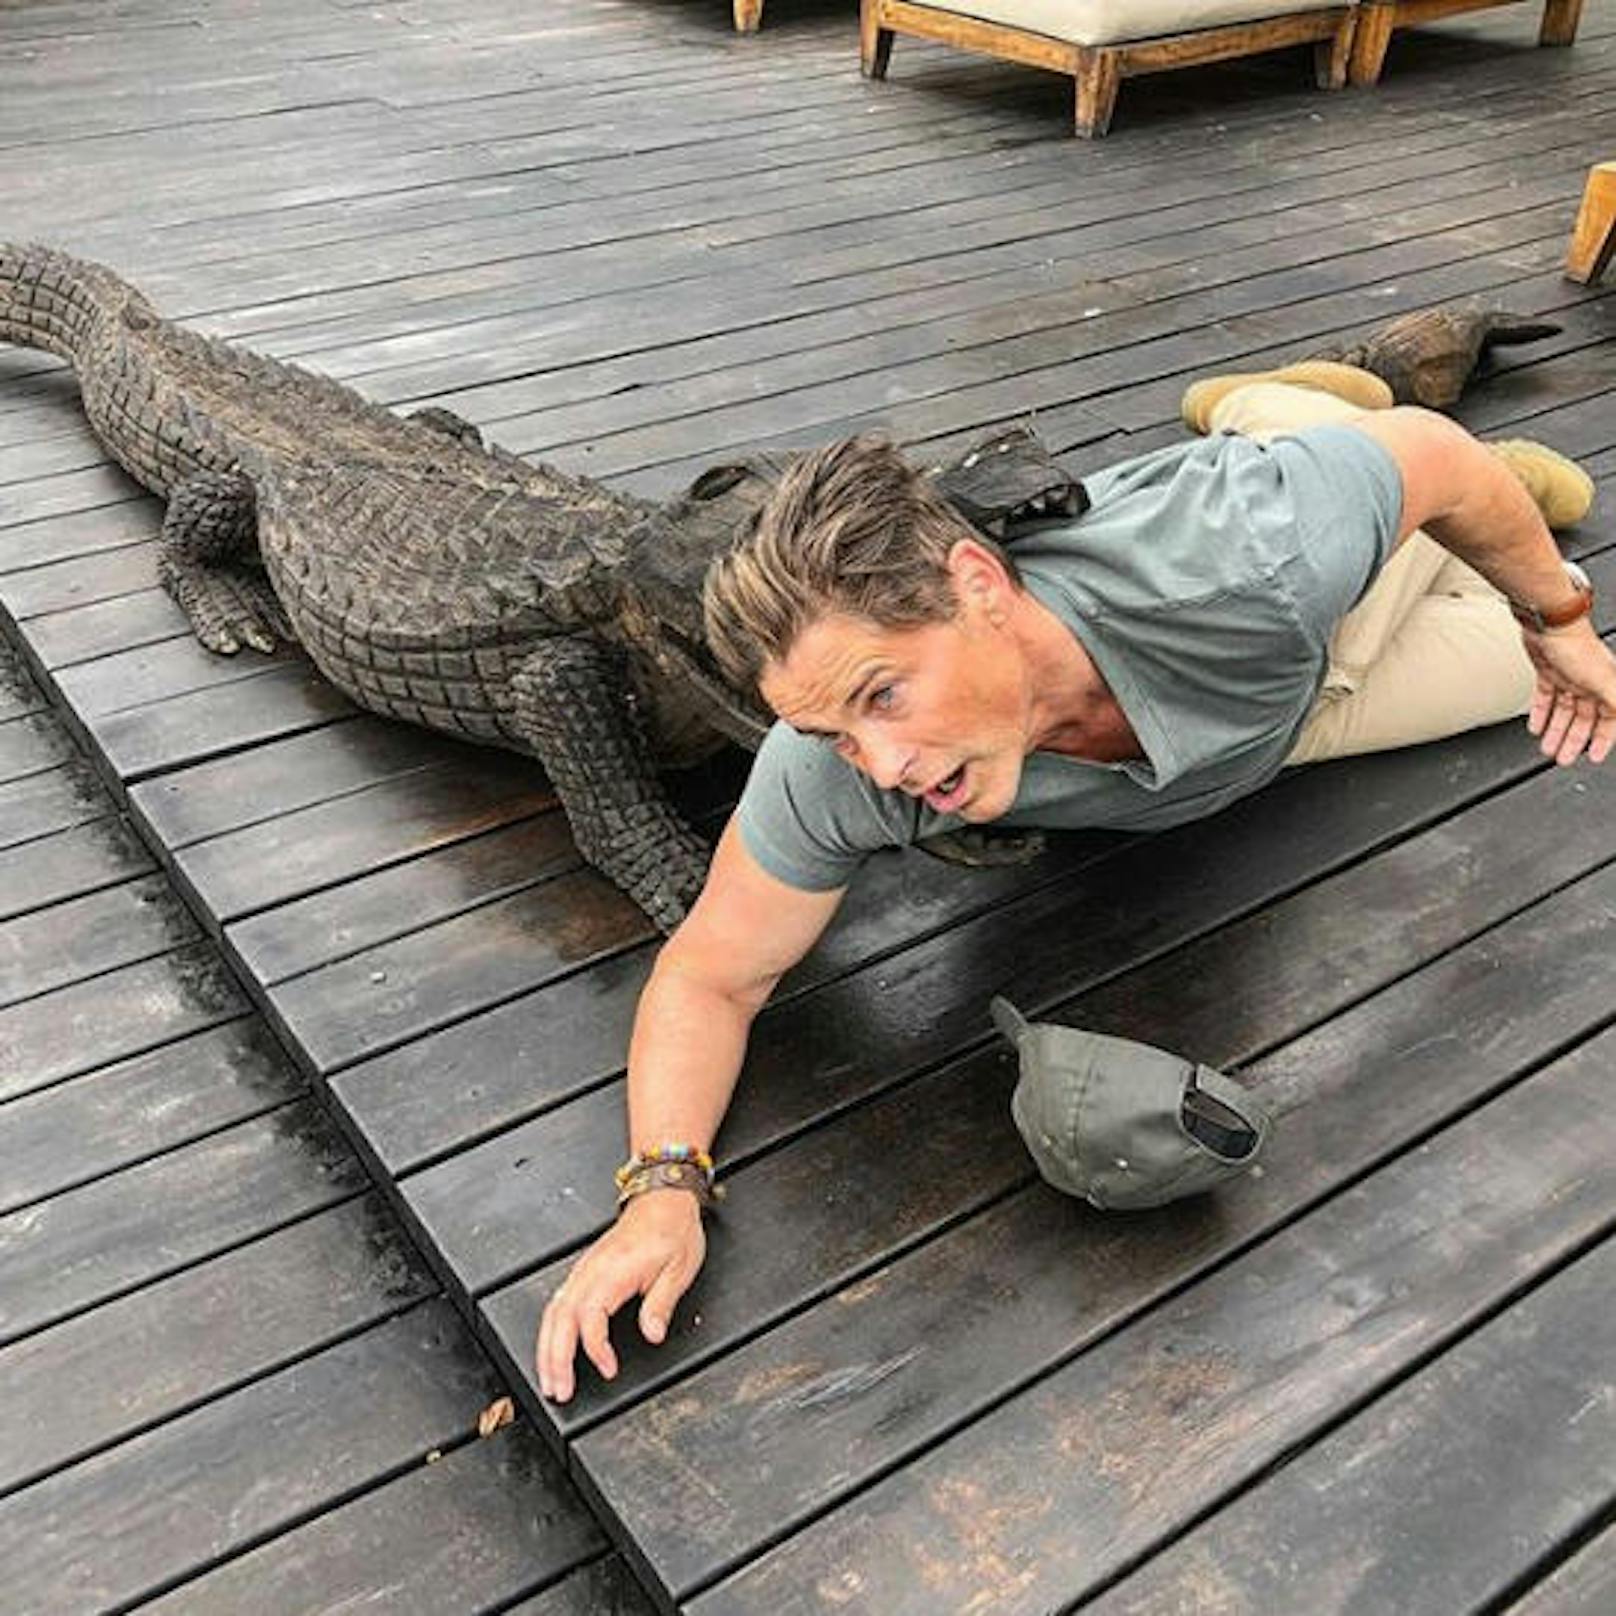 30.07.2018 Rob Lowe ("West Wing") hat Spass in Tansania: "Mein erster Tag auf Safari in Tansania und ich bin bereits in Schwierigkeiten"